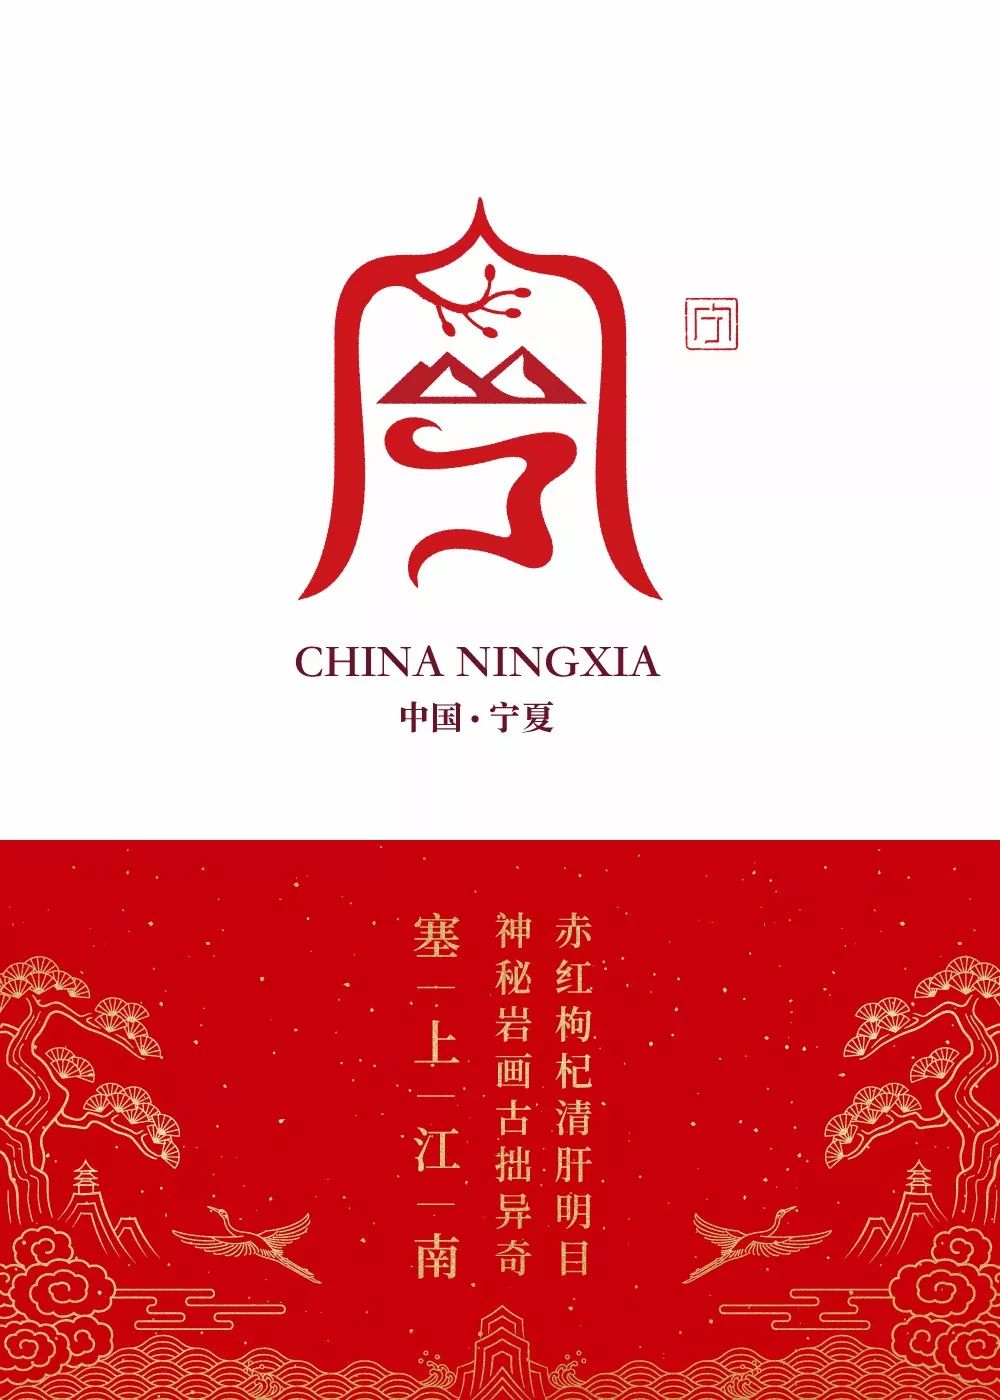 石昌鸿34个省市简称版字体设计，2020版全新发布！